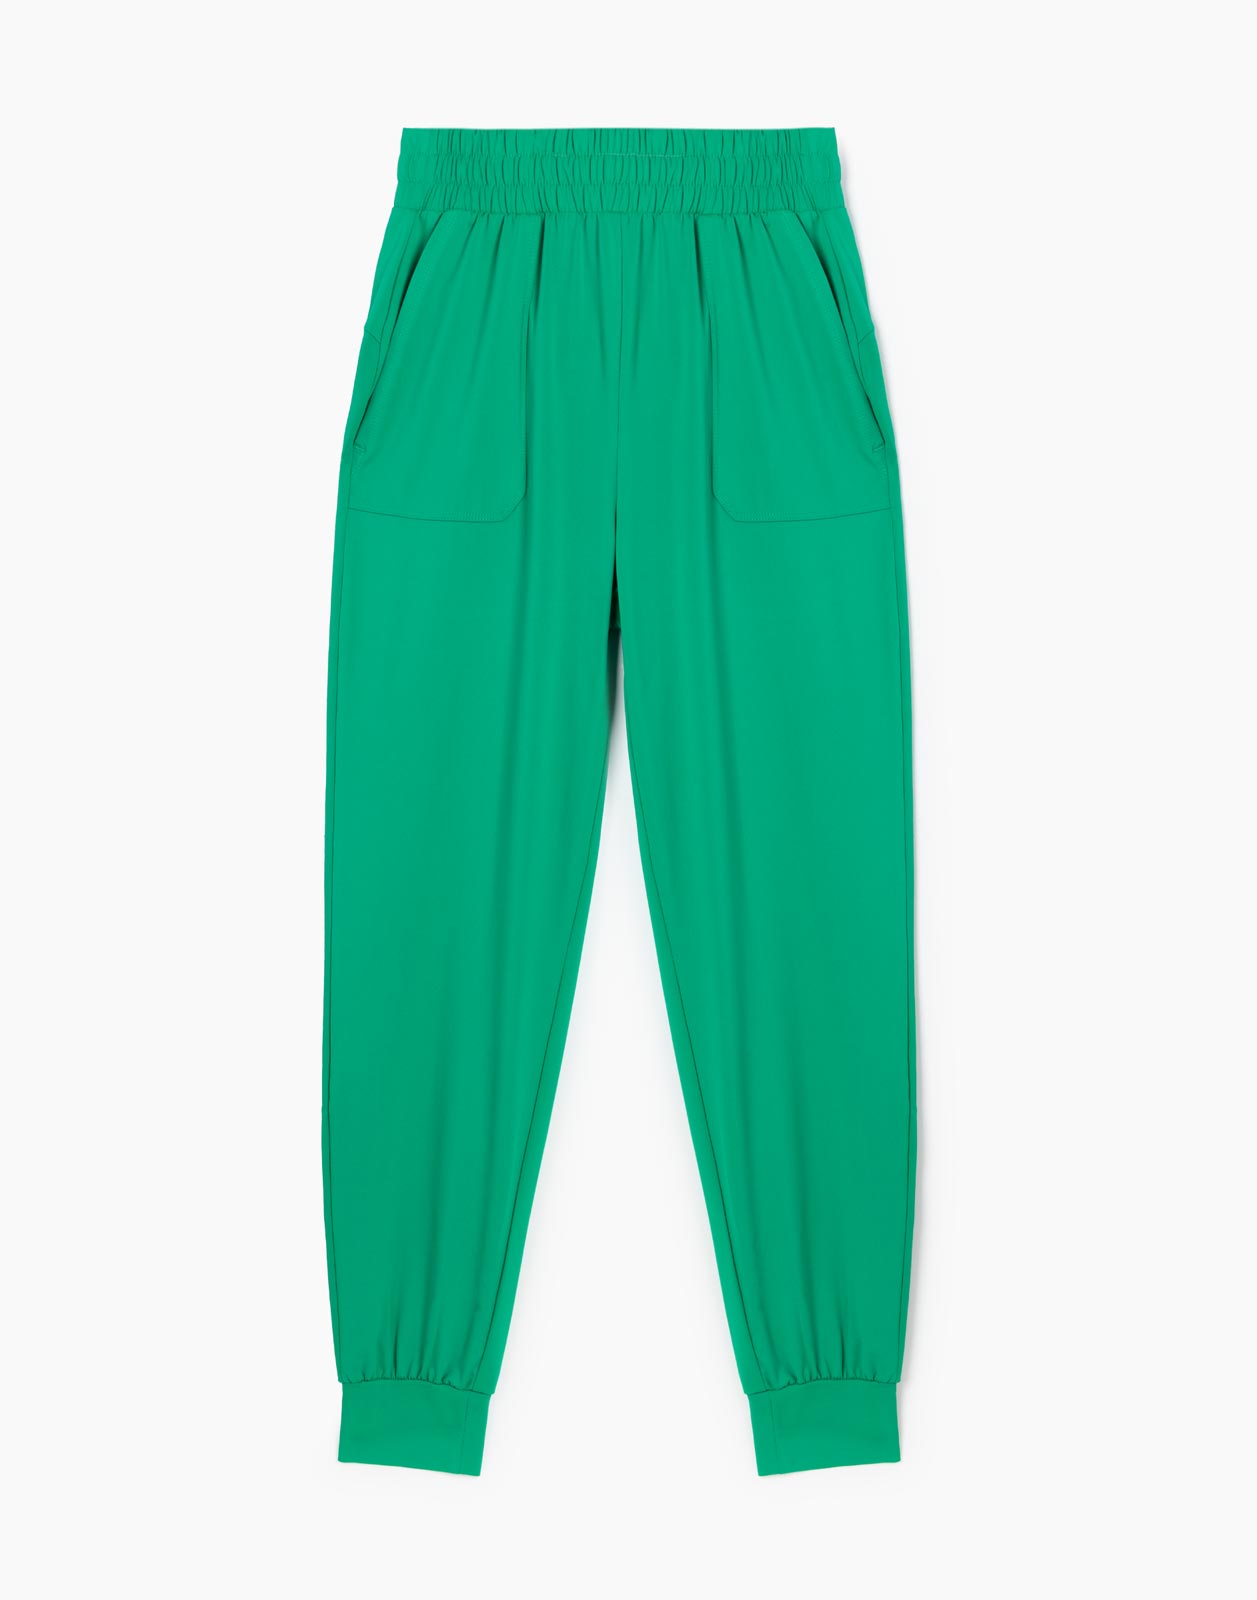 Зелёные спортивные брюки Jogger из микрофибры для девочки р.128